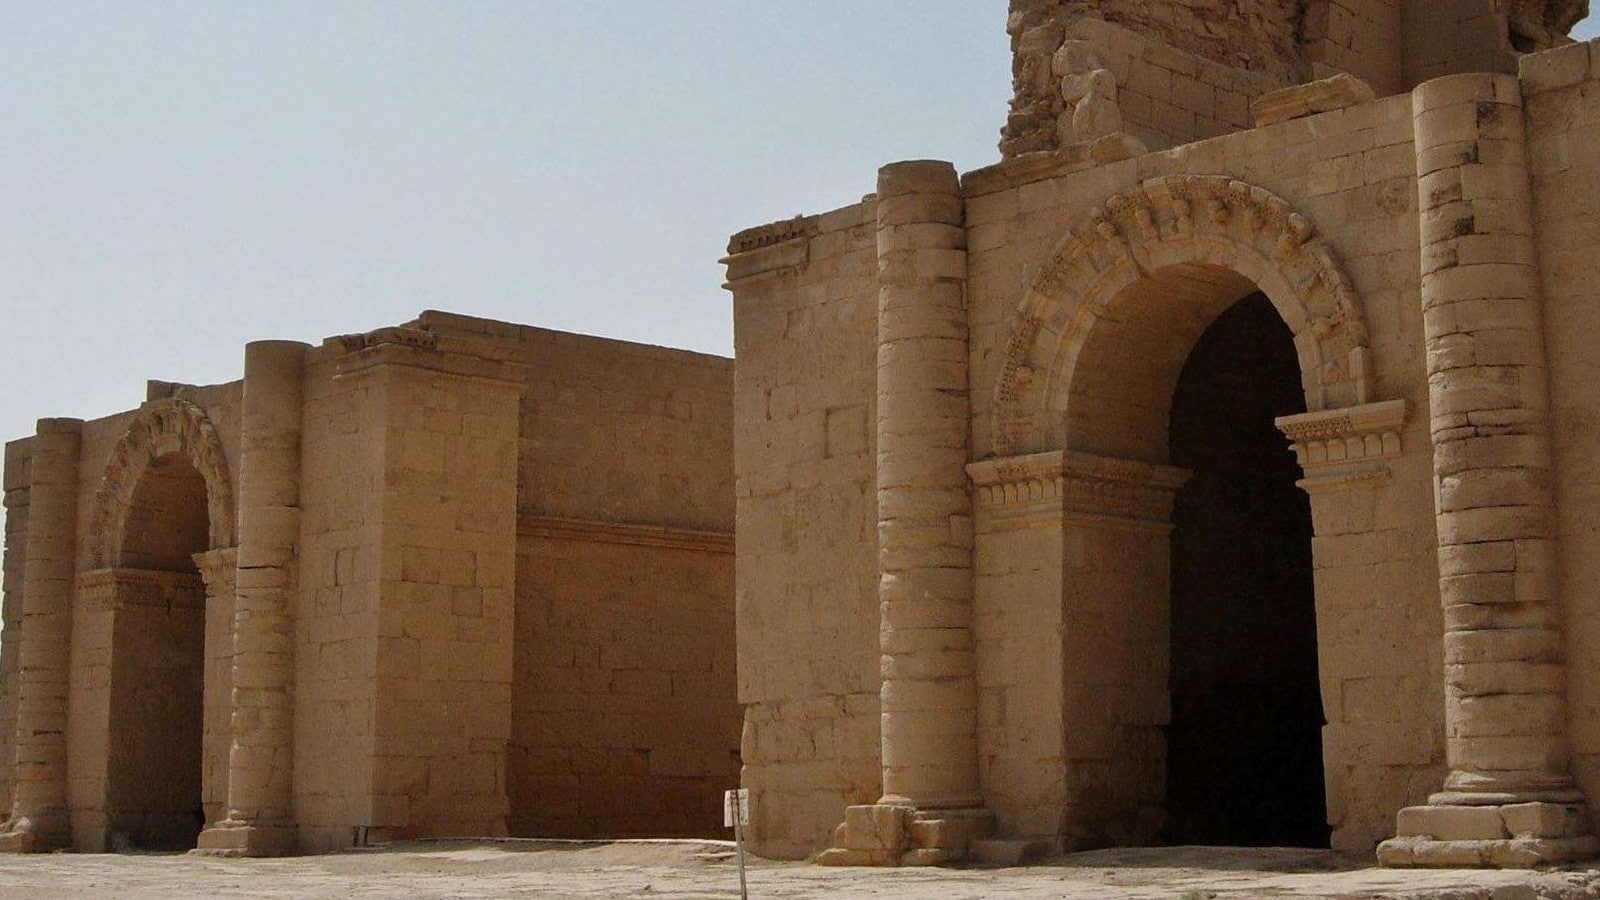 Les deux temples de la ville irakienne d'Hatra,
Auteurs  : Antonio Castaneda/AP/SIPA,
Numéro de reportage  : AP21703095_000001.